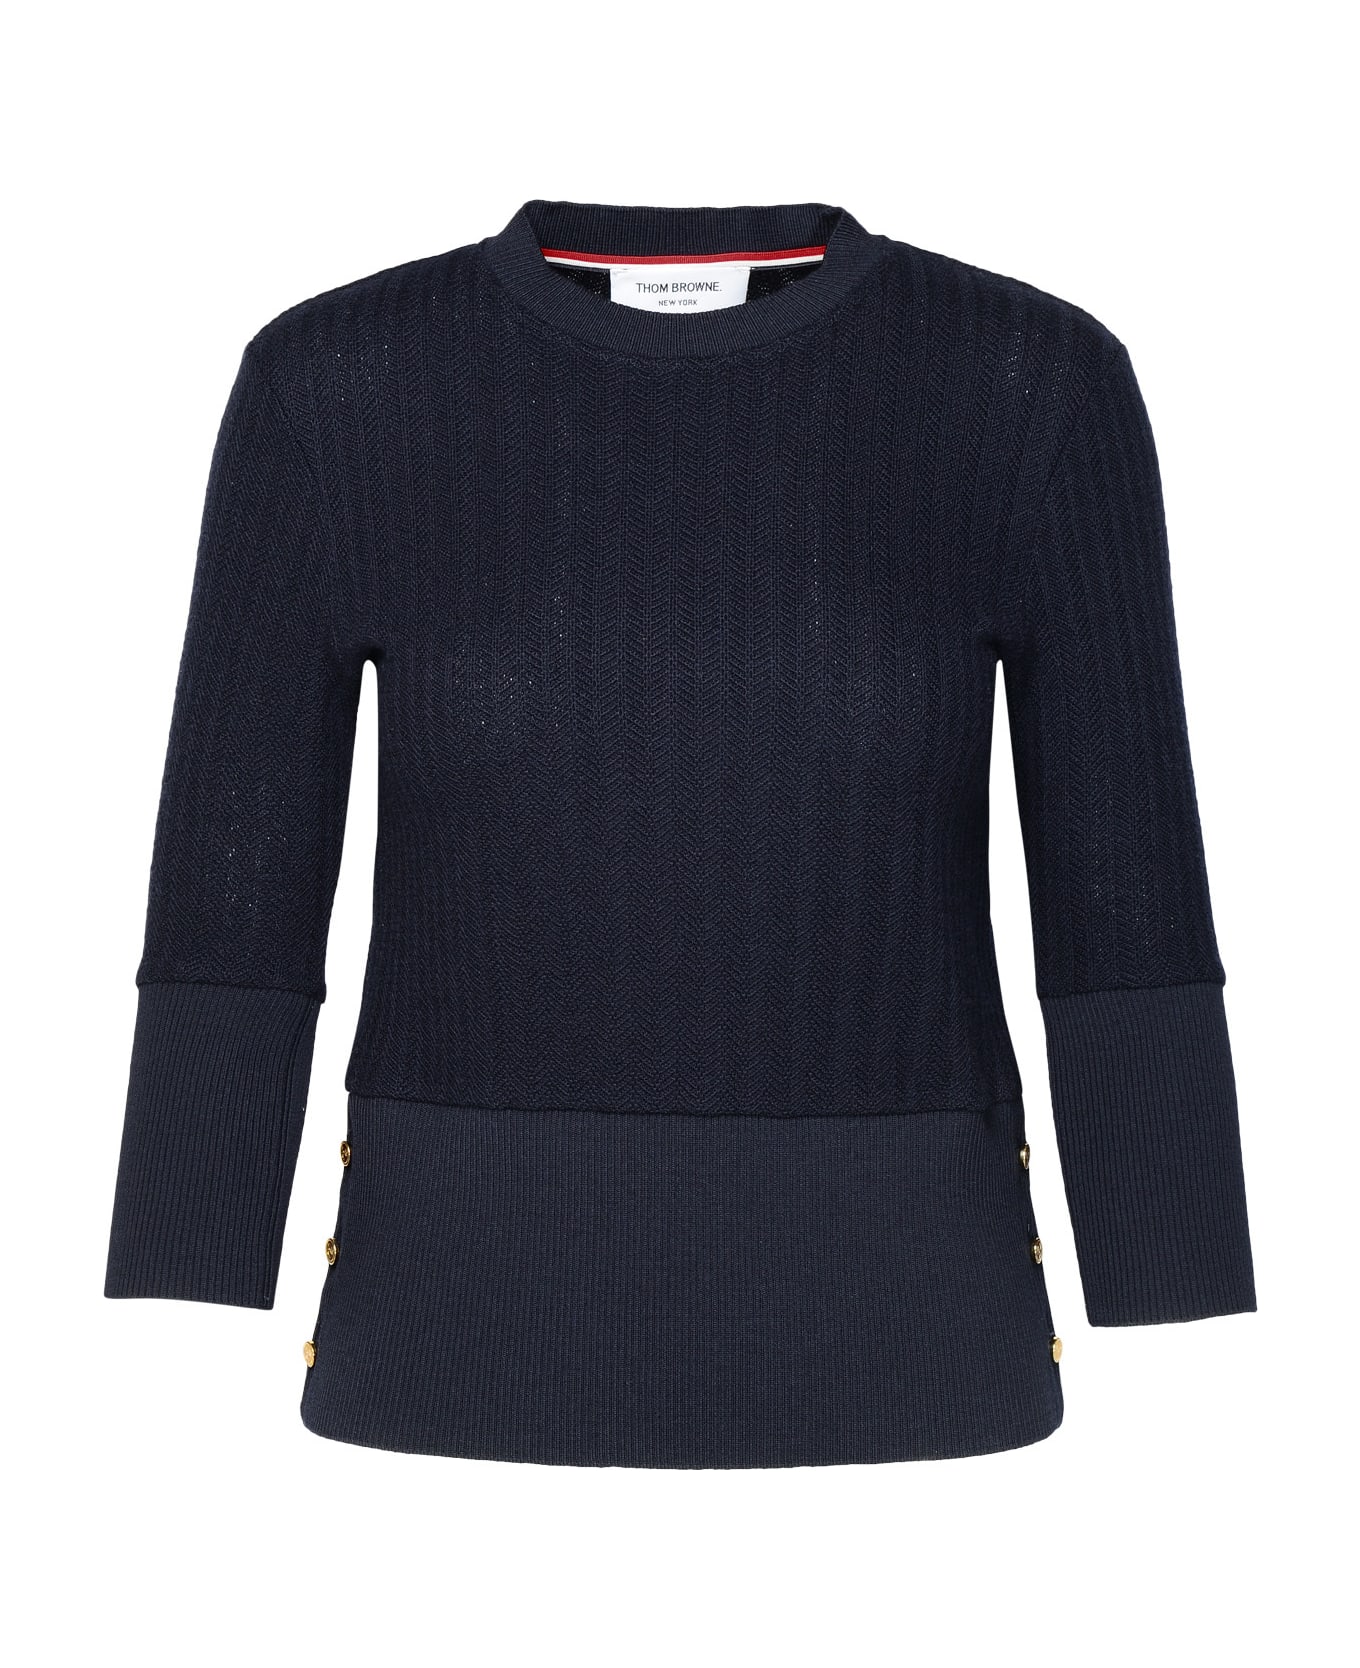 Thom Browne Navy Virgin Wool Sweater - Navy